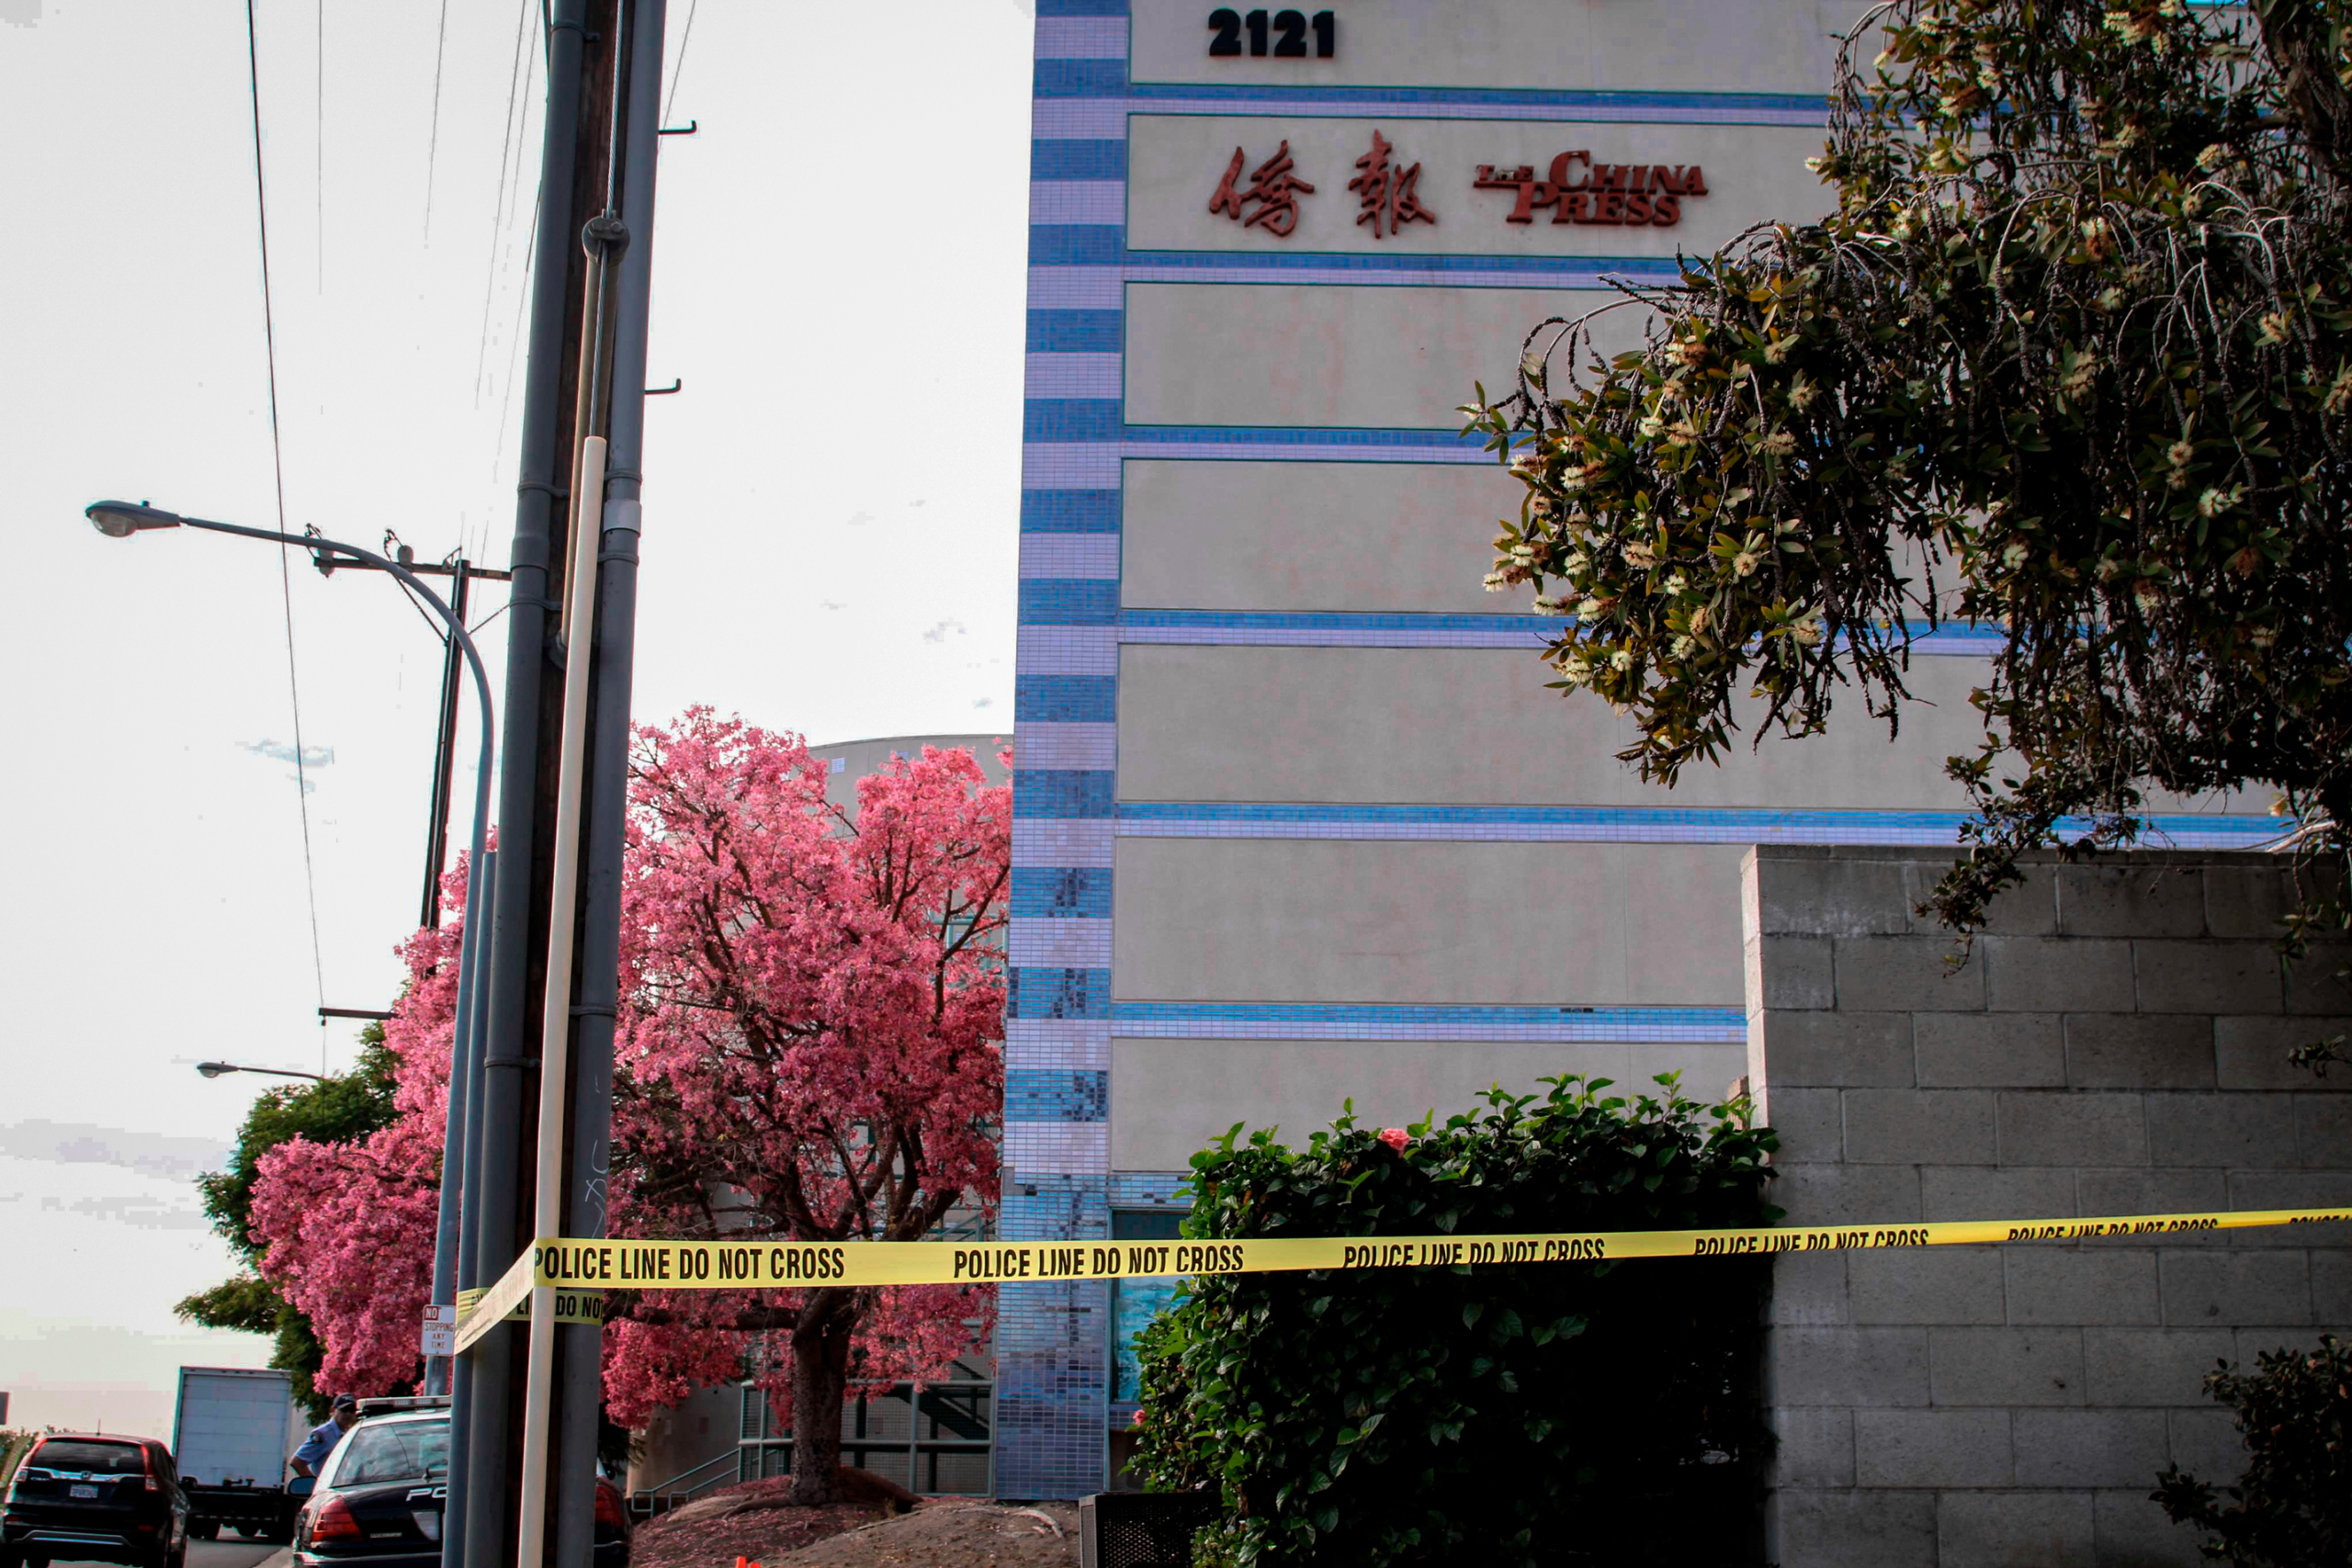 Tòa nhà China Press ở Alhambra, California, vào ngày 16/11/2018. Ông Tạ Nhất Ninh (Xia Yining), người sáng lập kiêm chủ tịch của tờ báo này, đã bị bắn tử vong bên trong văn phòng của ấn phẩm này vào ngày 16/11/2018. (Ảnh: Linda Jiang/The Epoch Times)